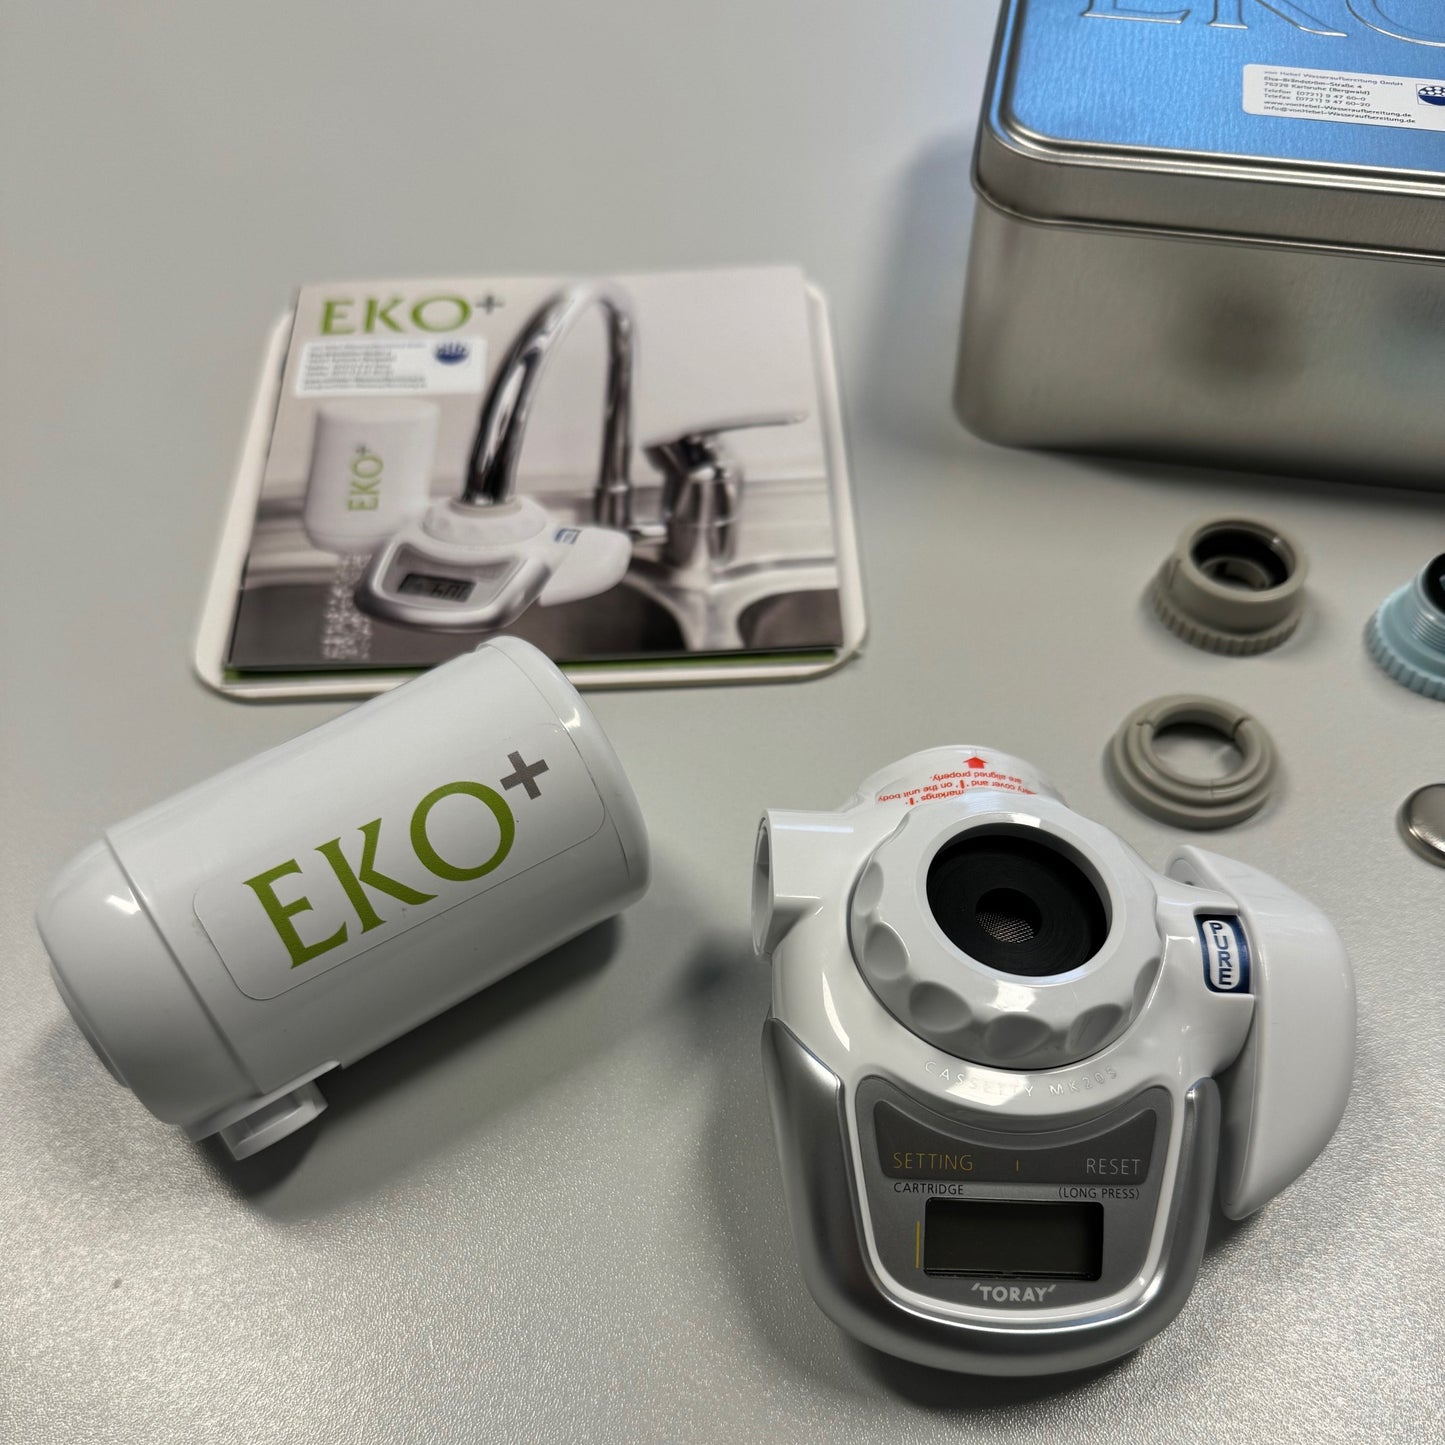 HEKADES Eko+ Wasserhahnfilter mit Ultrafiltration